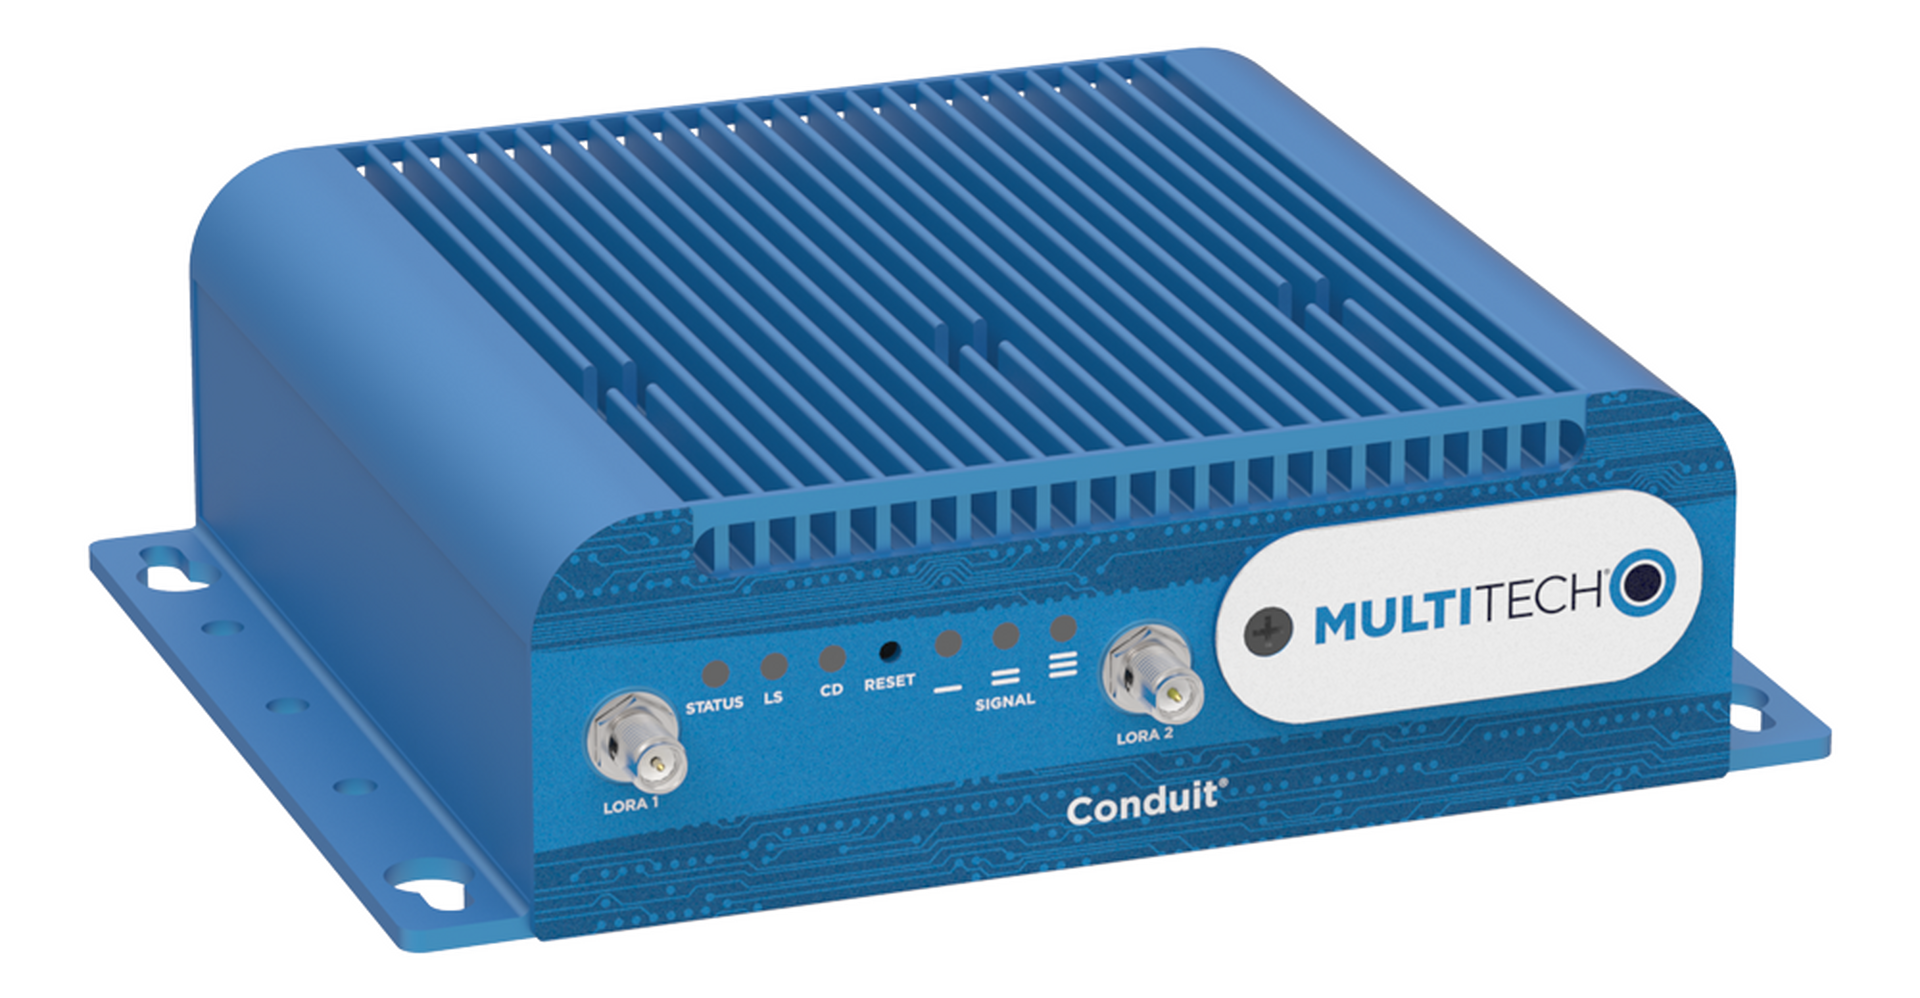 Multitech MT Conduit 300